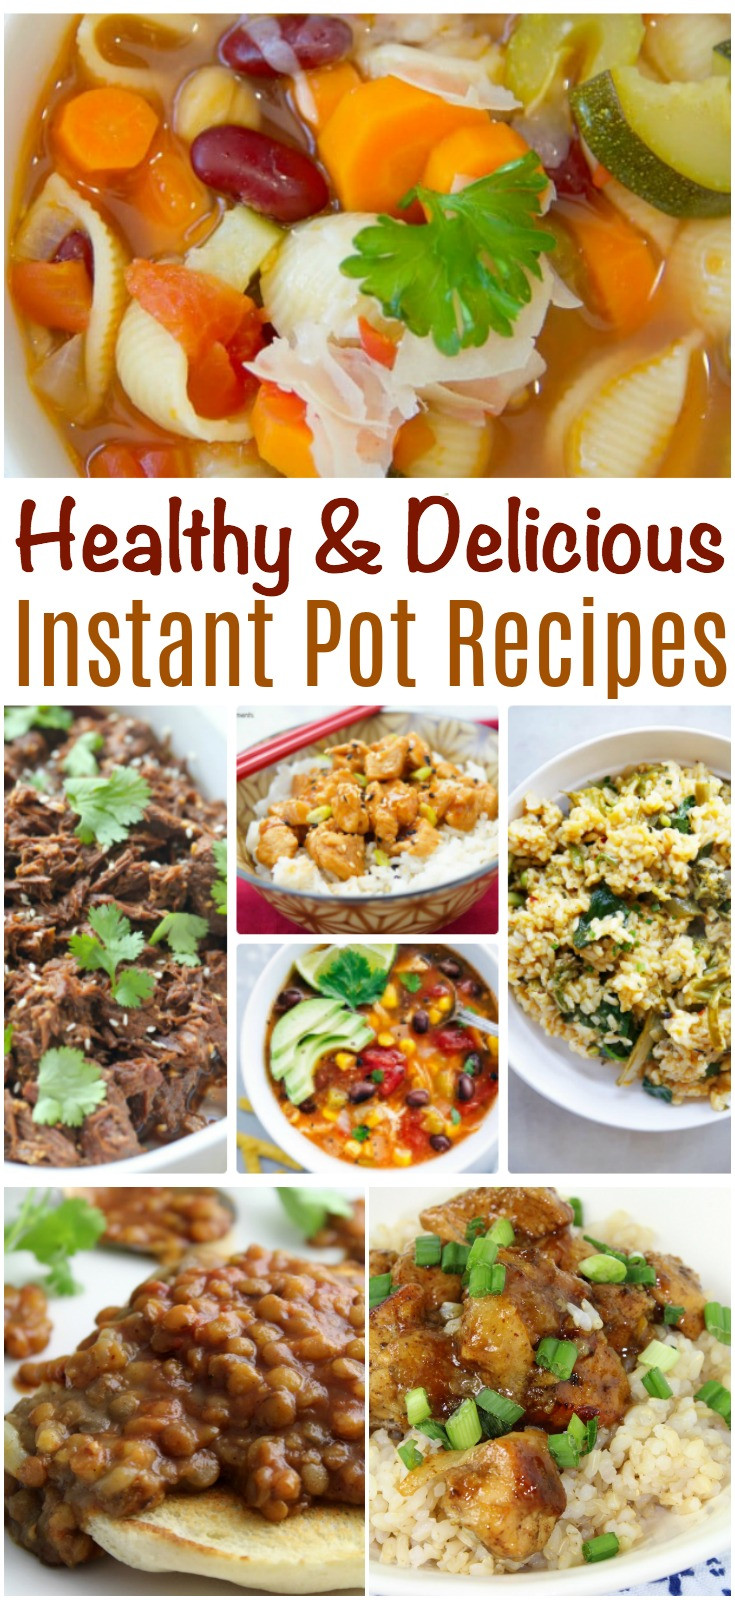 Instant Pot Healthy Recipes
 Healthy and Delicious Instant Pot Recipes